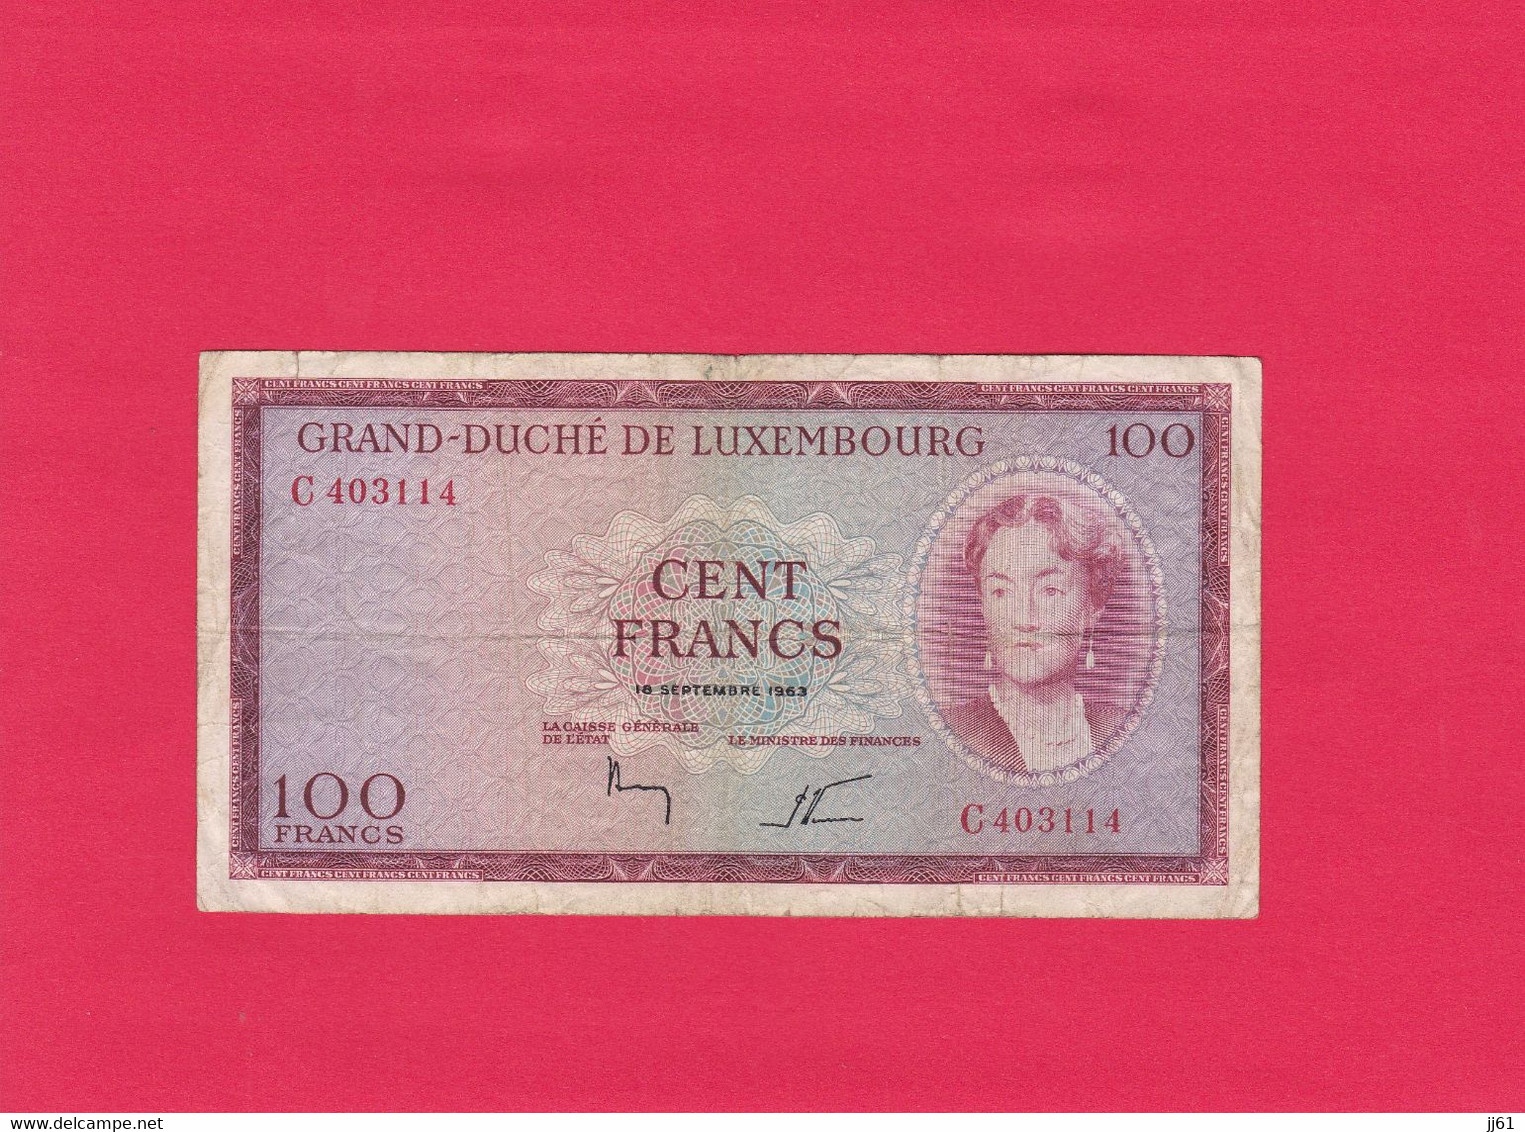 BILLET GRAND DUCHE DE LUXEMBOURG CENT FRANCS N° C403114 18 SEPTEMBRE 1963 ETAT D USAGE PLIURES AU MILIEU TACHES NORMAL - Luxembourg